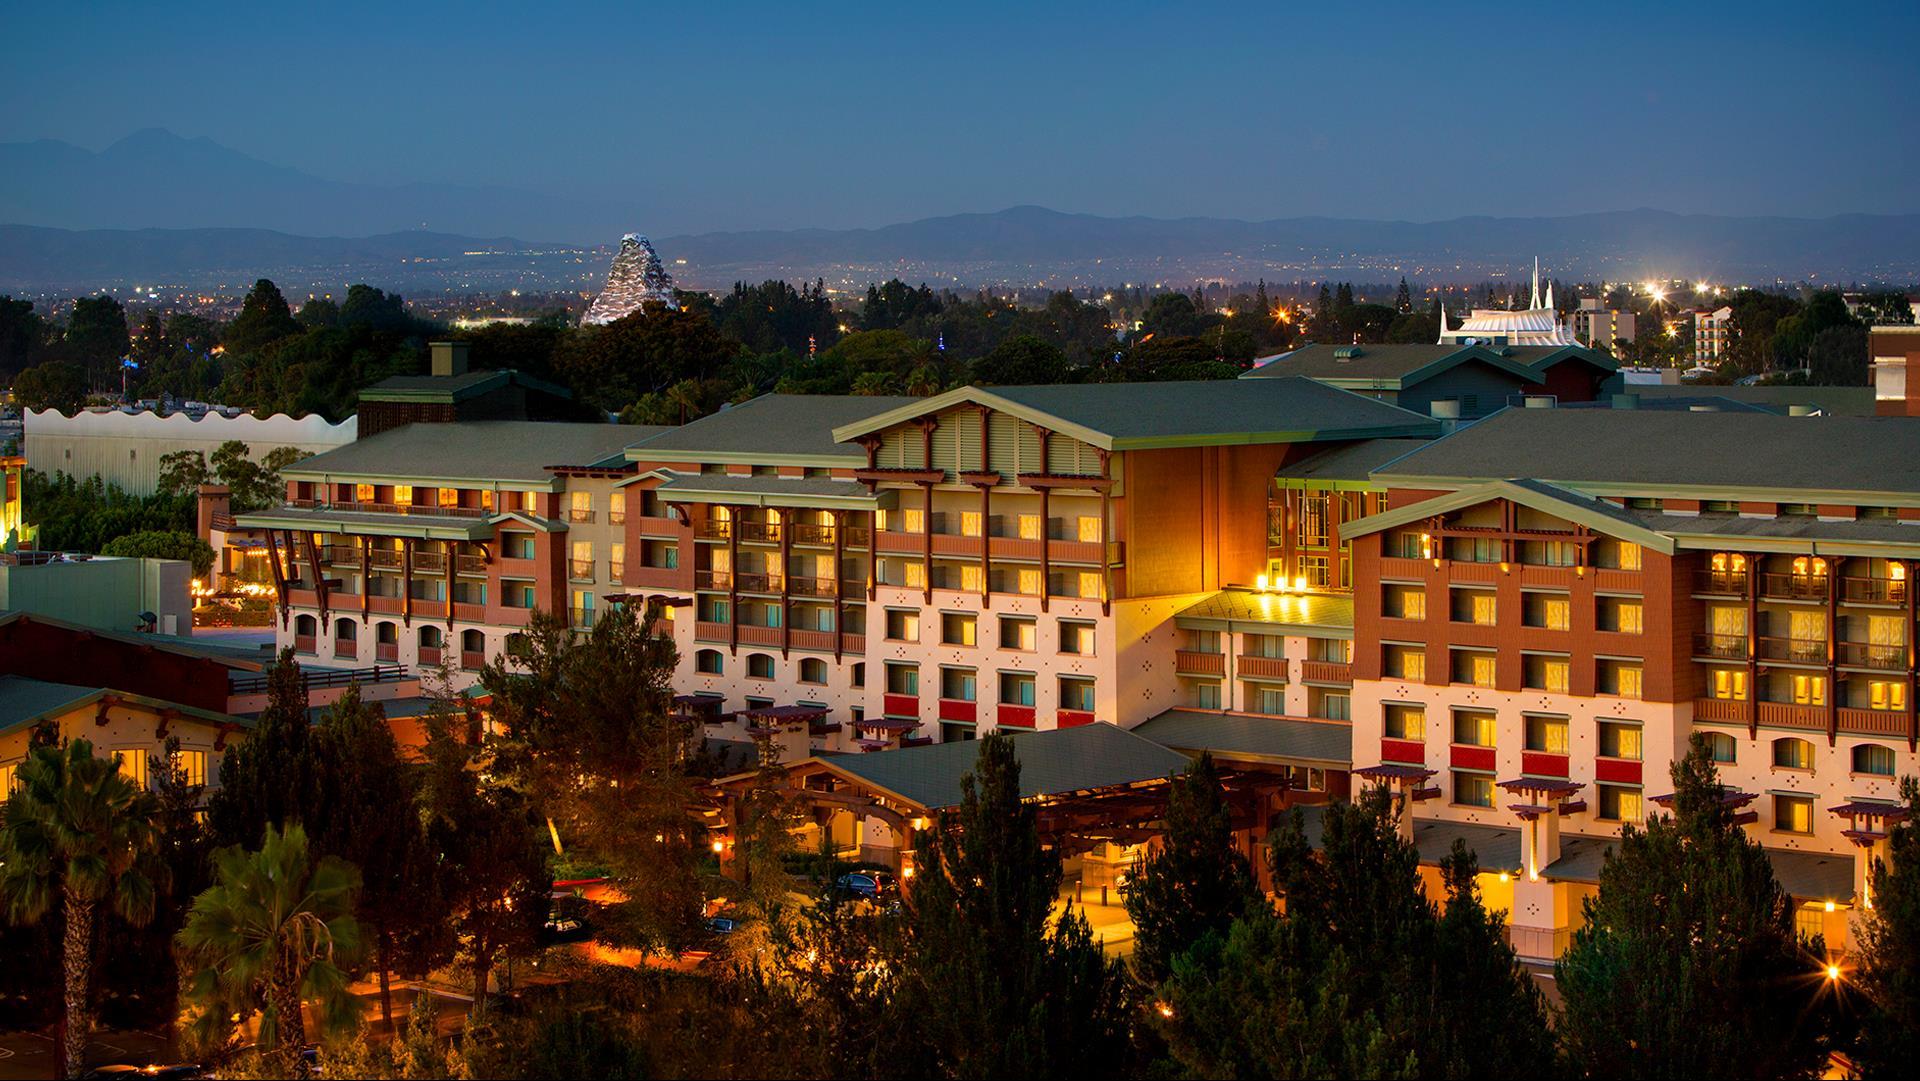 Disney's Grand Californian Hotel & Spa in Anaheim, CA